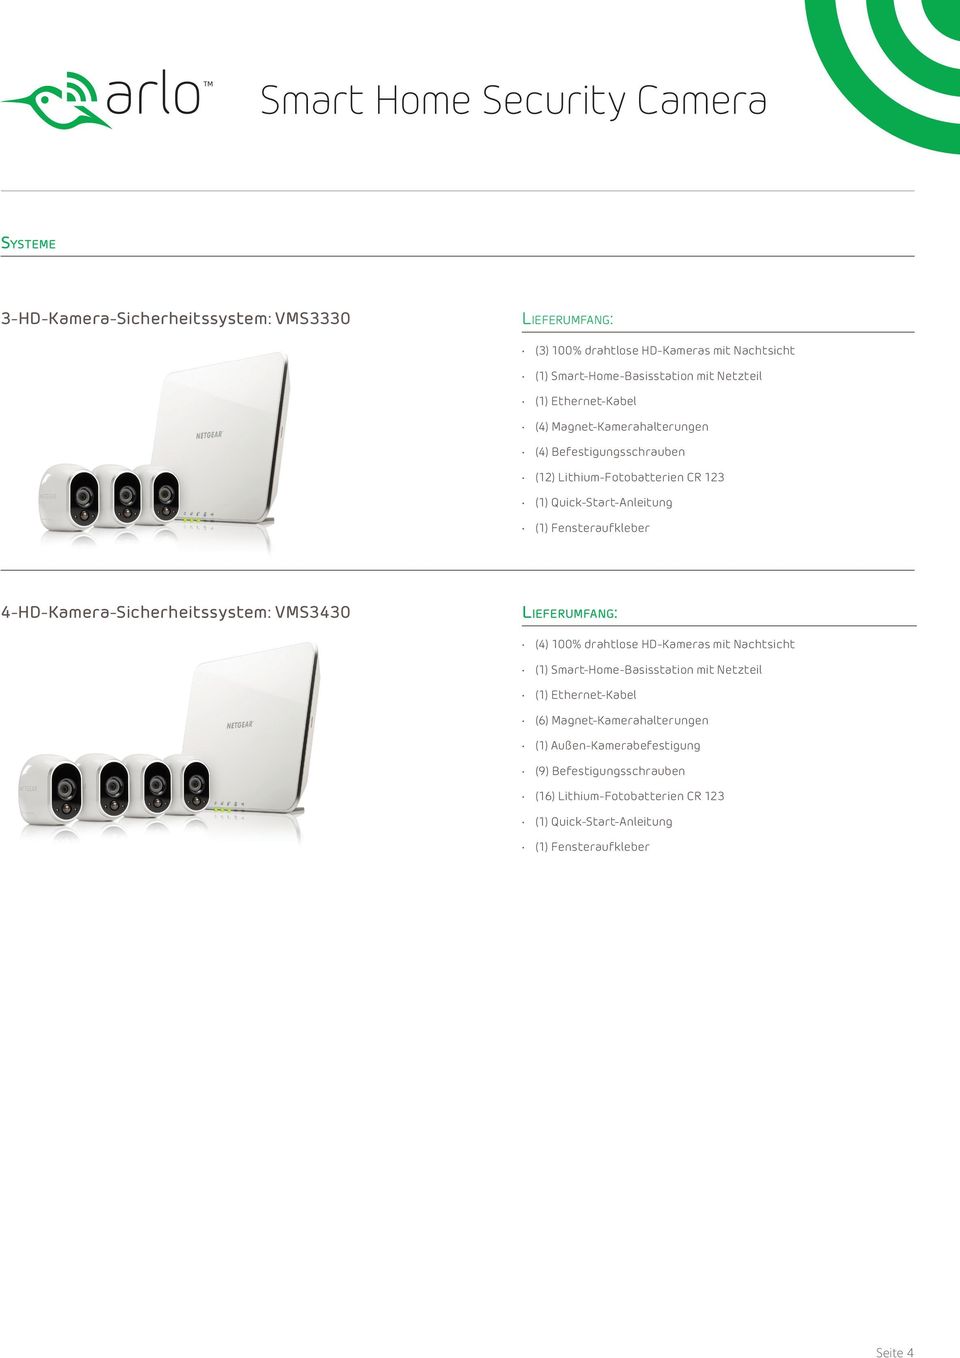 4-HD-Kamera-Sicherheitssystem: VMS3430 (4) 100% drahtlose HD-Kameras mit Nachtsicht (6)